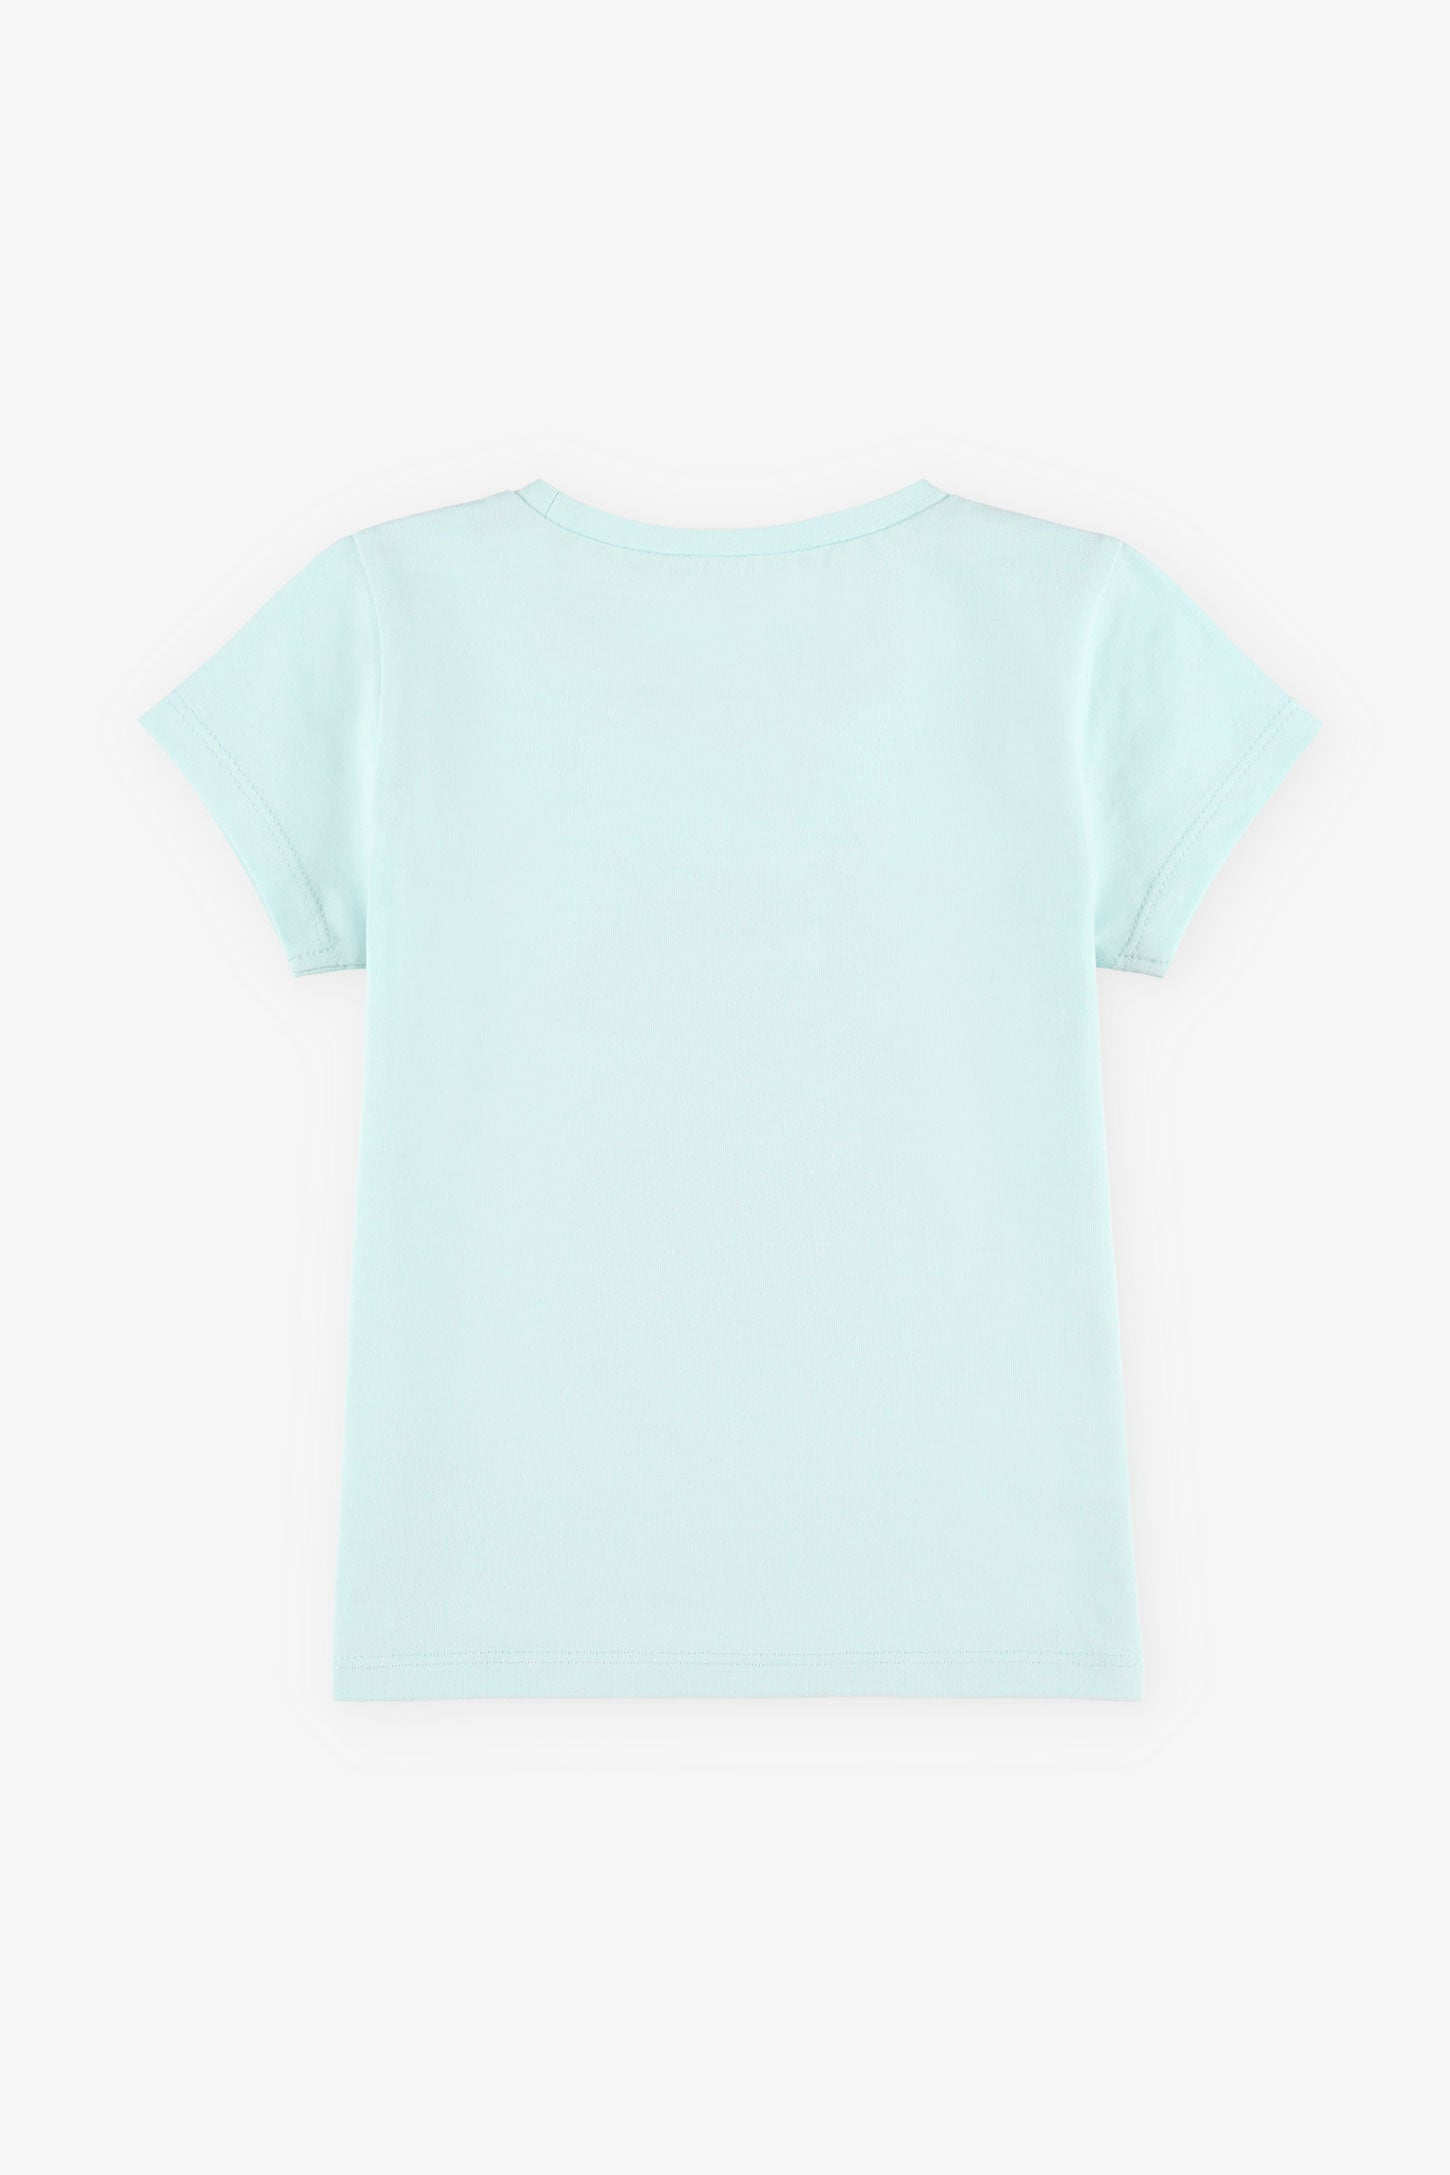 T-shirt rond imprimé coton, 2T-3T, 2/15$ - Bébé fille && BLEU PALE